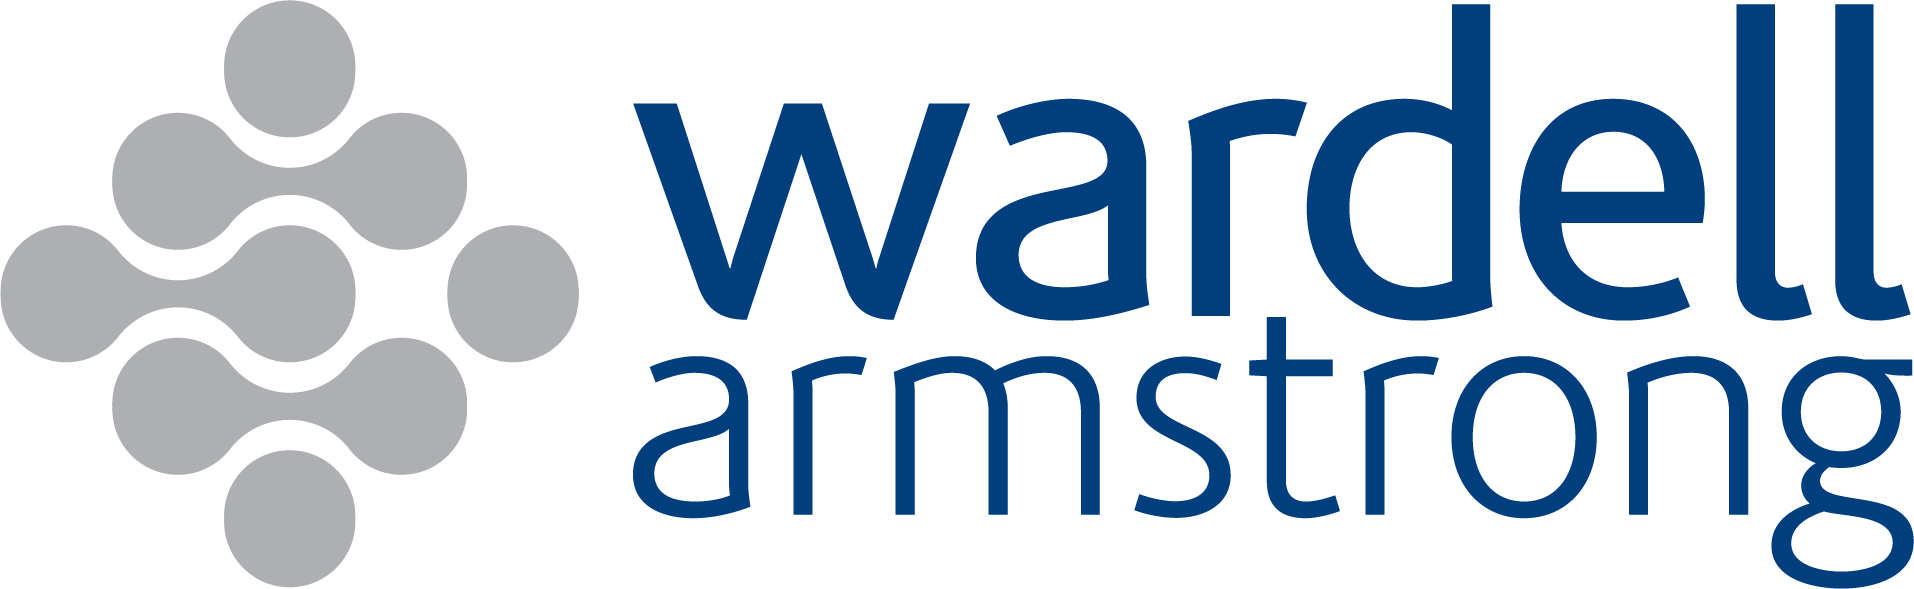 WA logo [block only].png